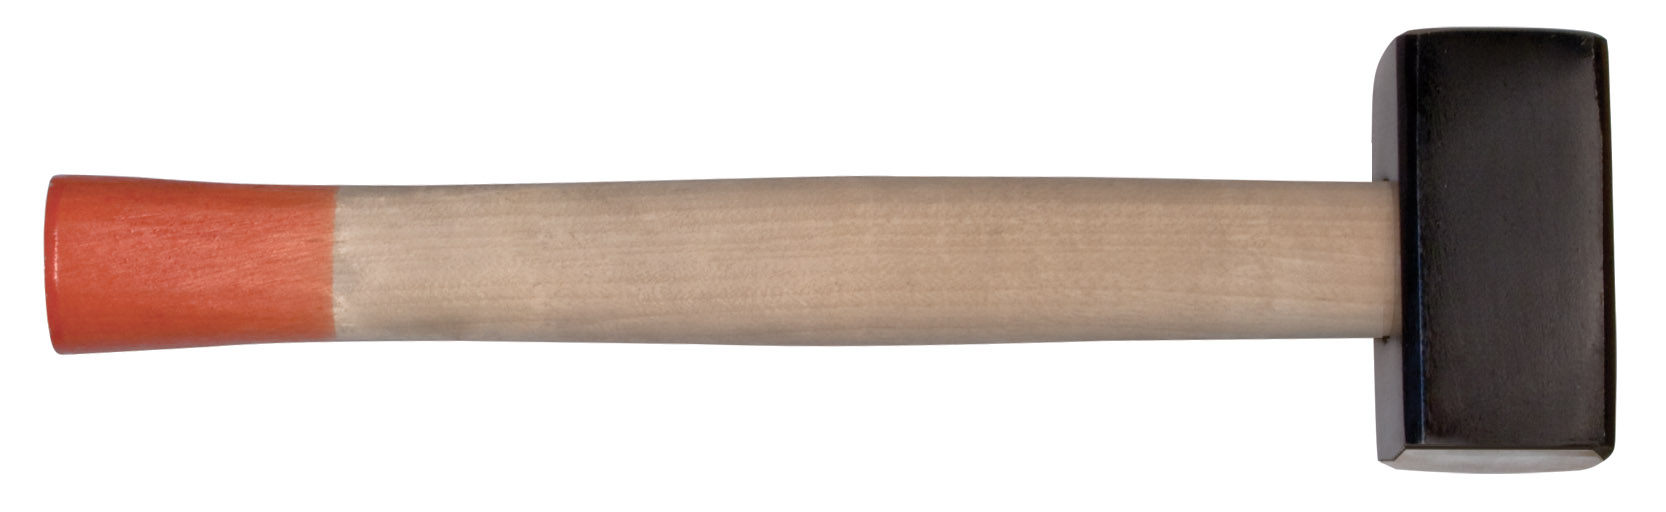 Кувалда кованая в сборе, деревянная ручка  8 кг FIT 45028